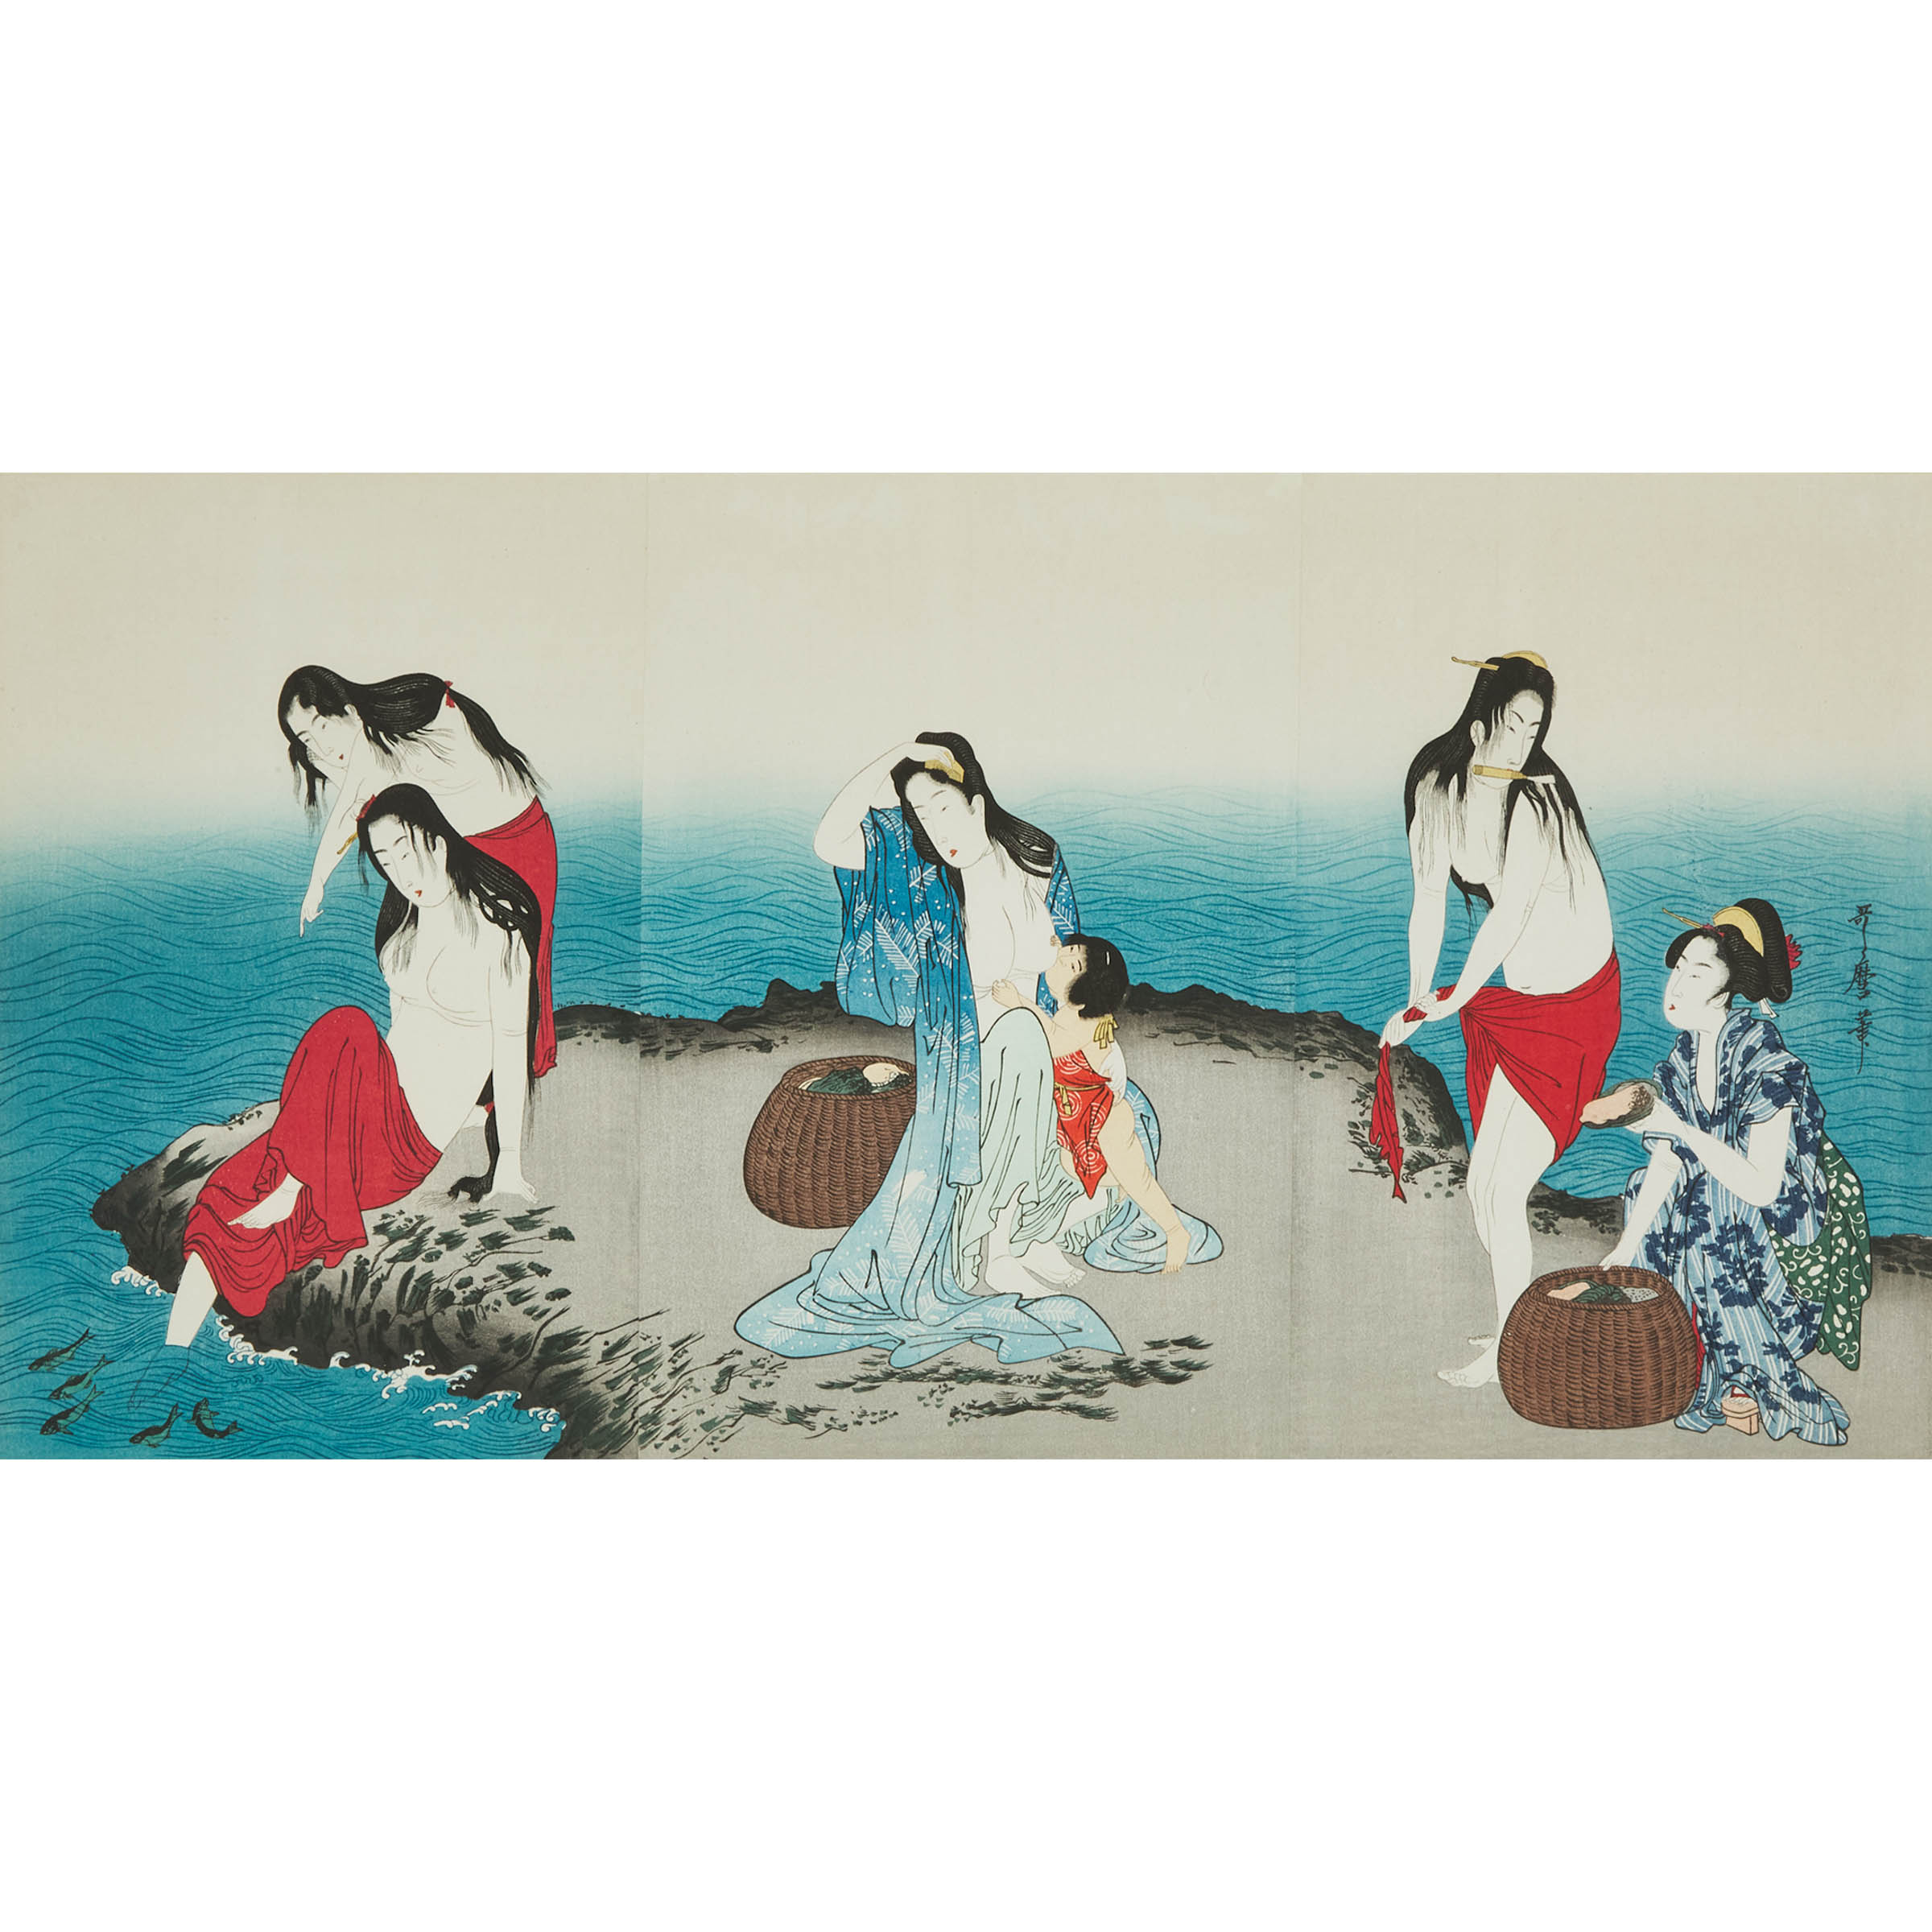 Kitagawa Utamaro (1753-1806), Abalone Divers (Awabi Tori)